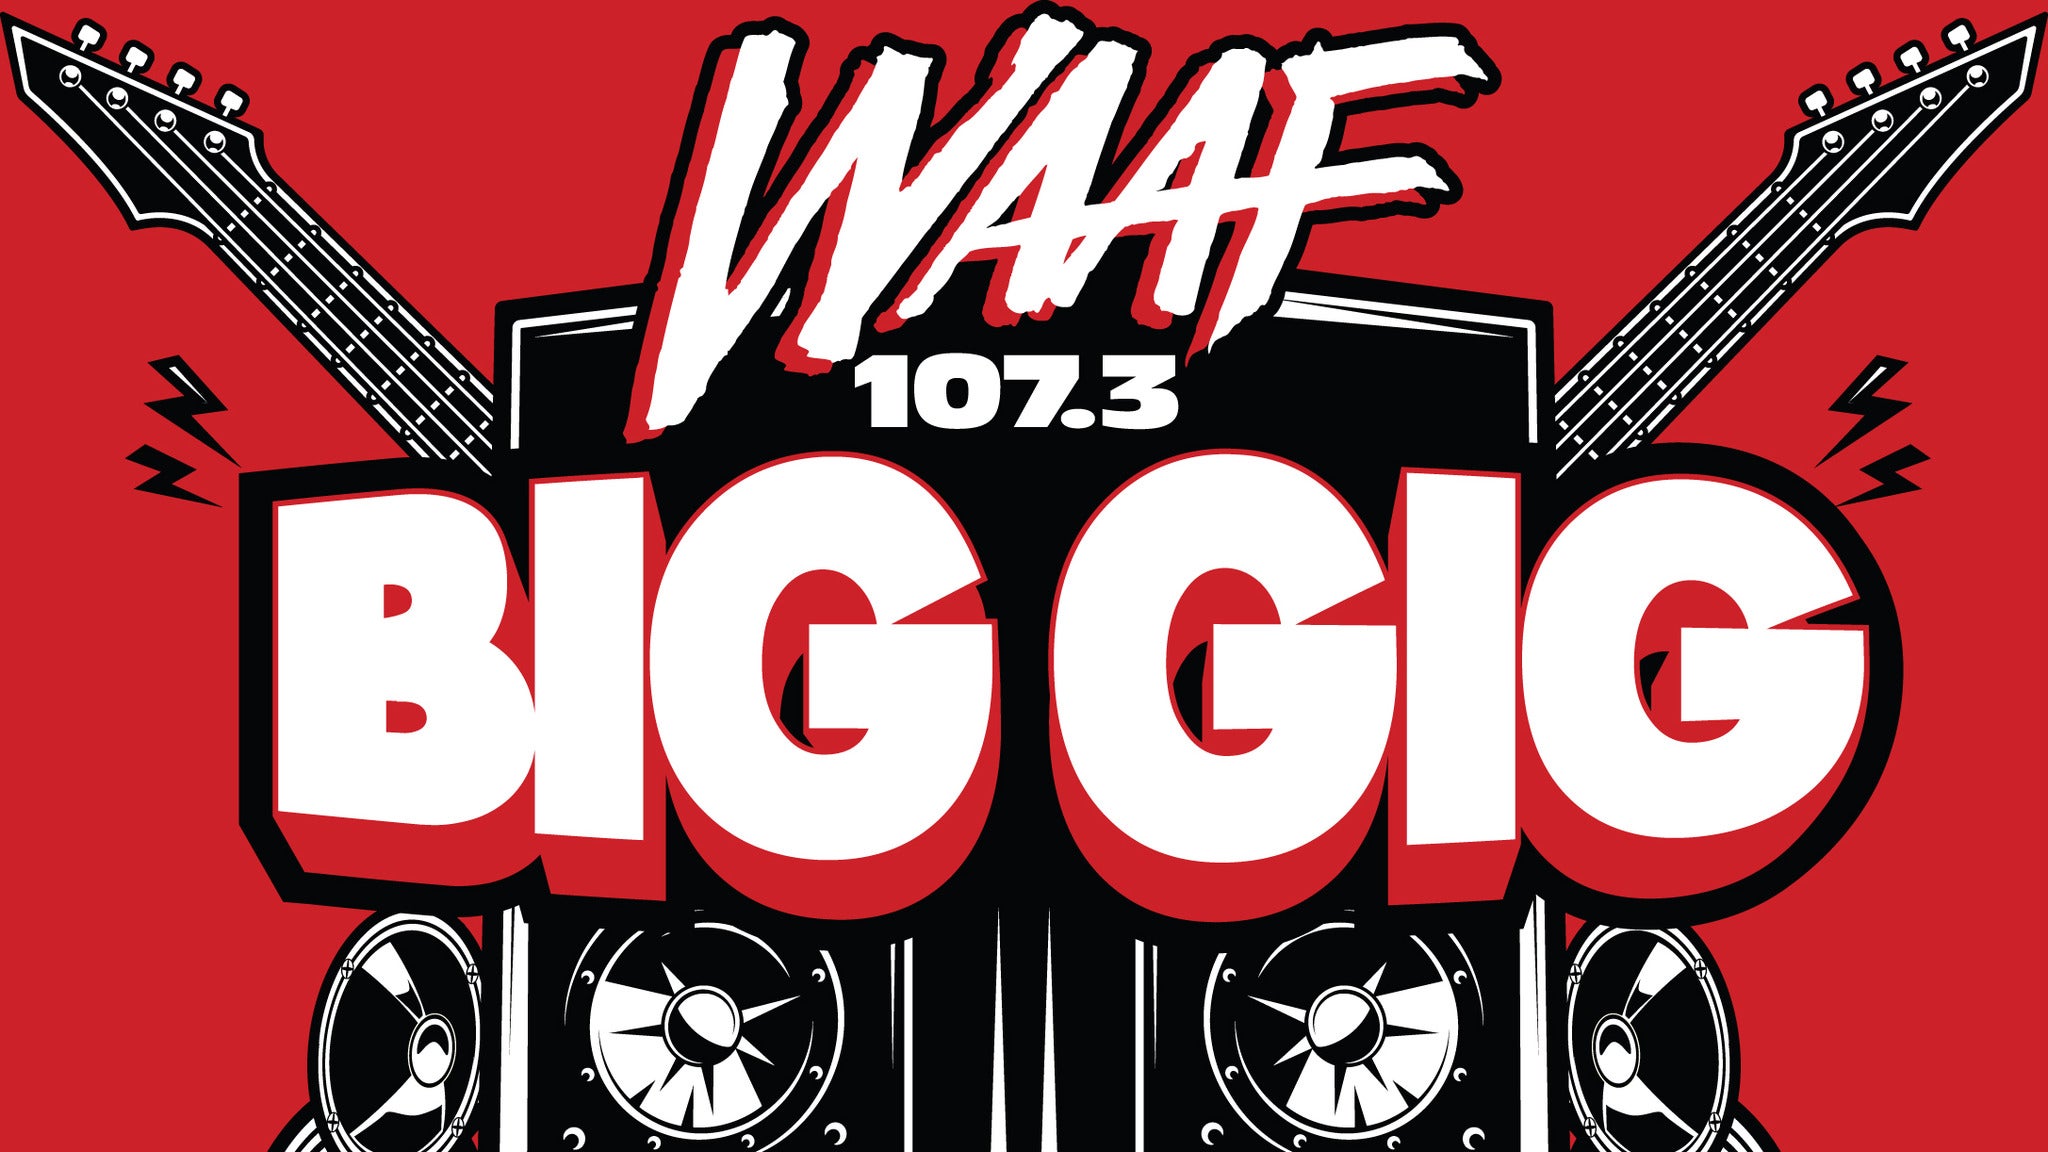 WAAF Big GIG featuring Godsmack in Worcester promo photo for Official Platinum presale offer code